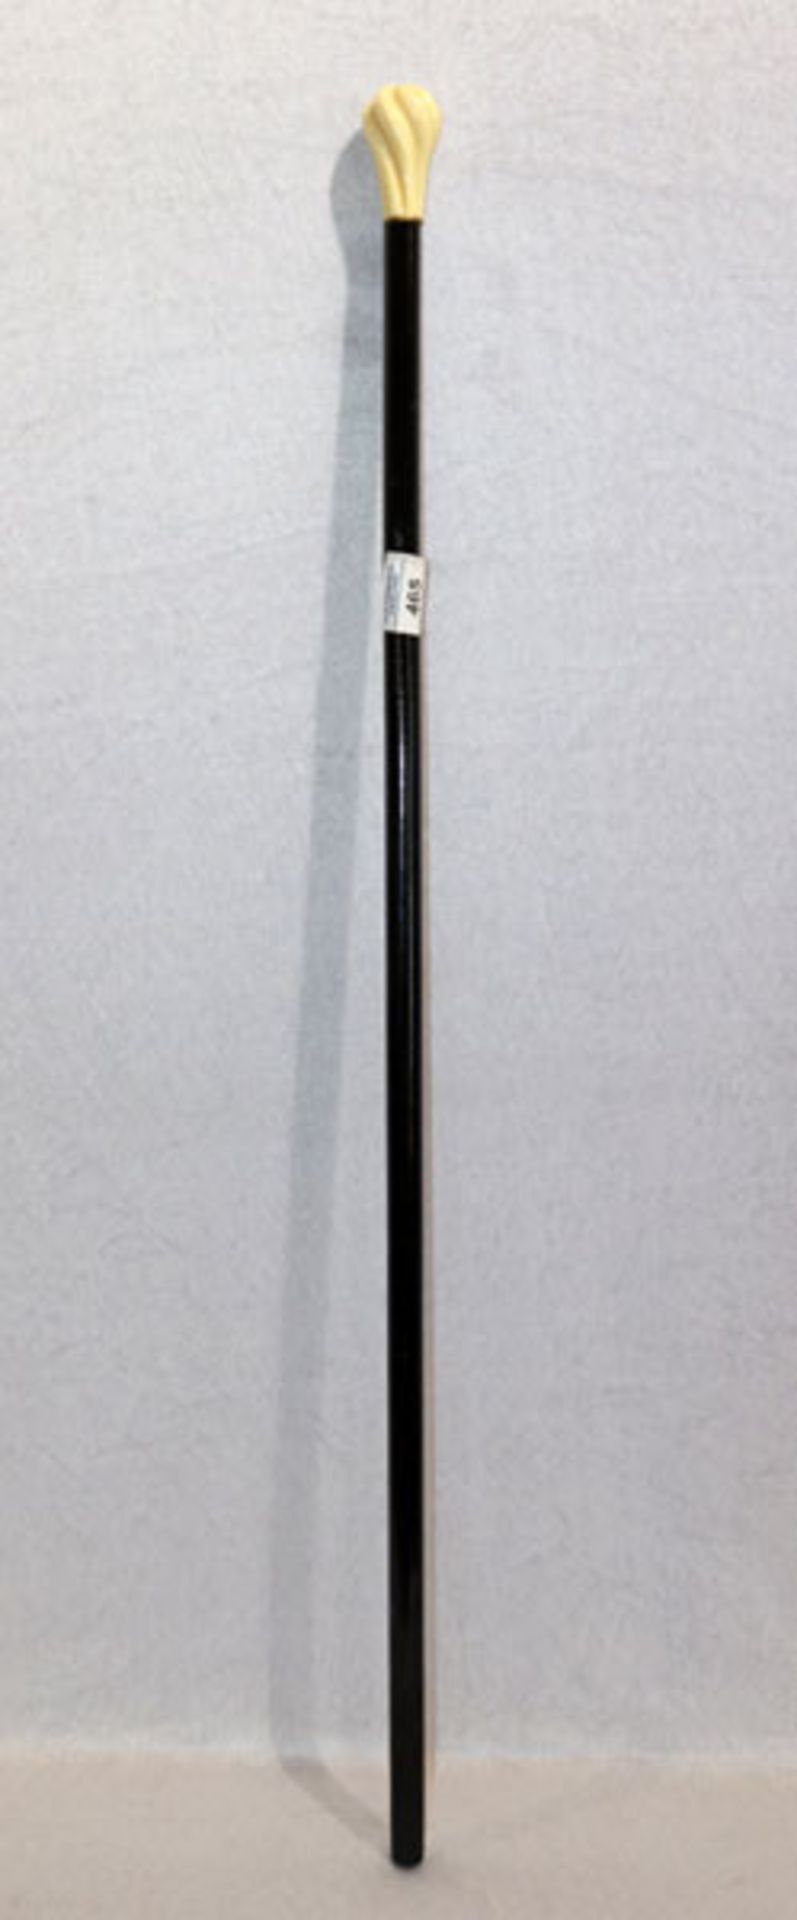 Holz Spazierstock mit gedrehtem Griff, monogrammiert CR 1867, L 90 cm, Gebrauchsspuren